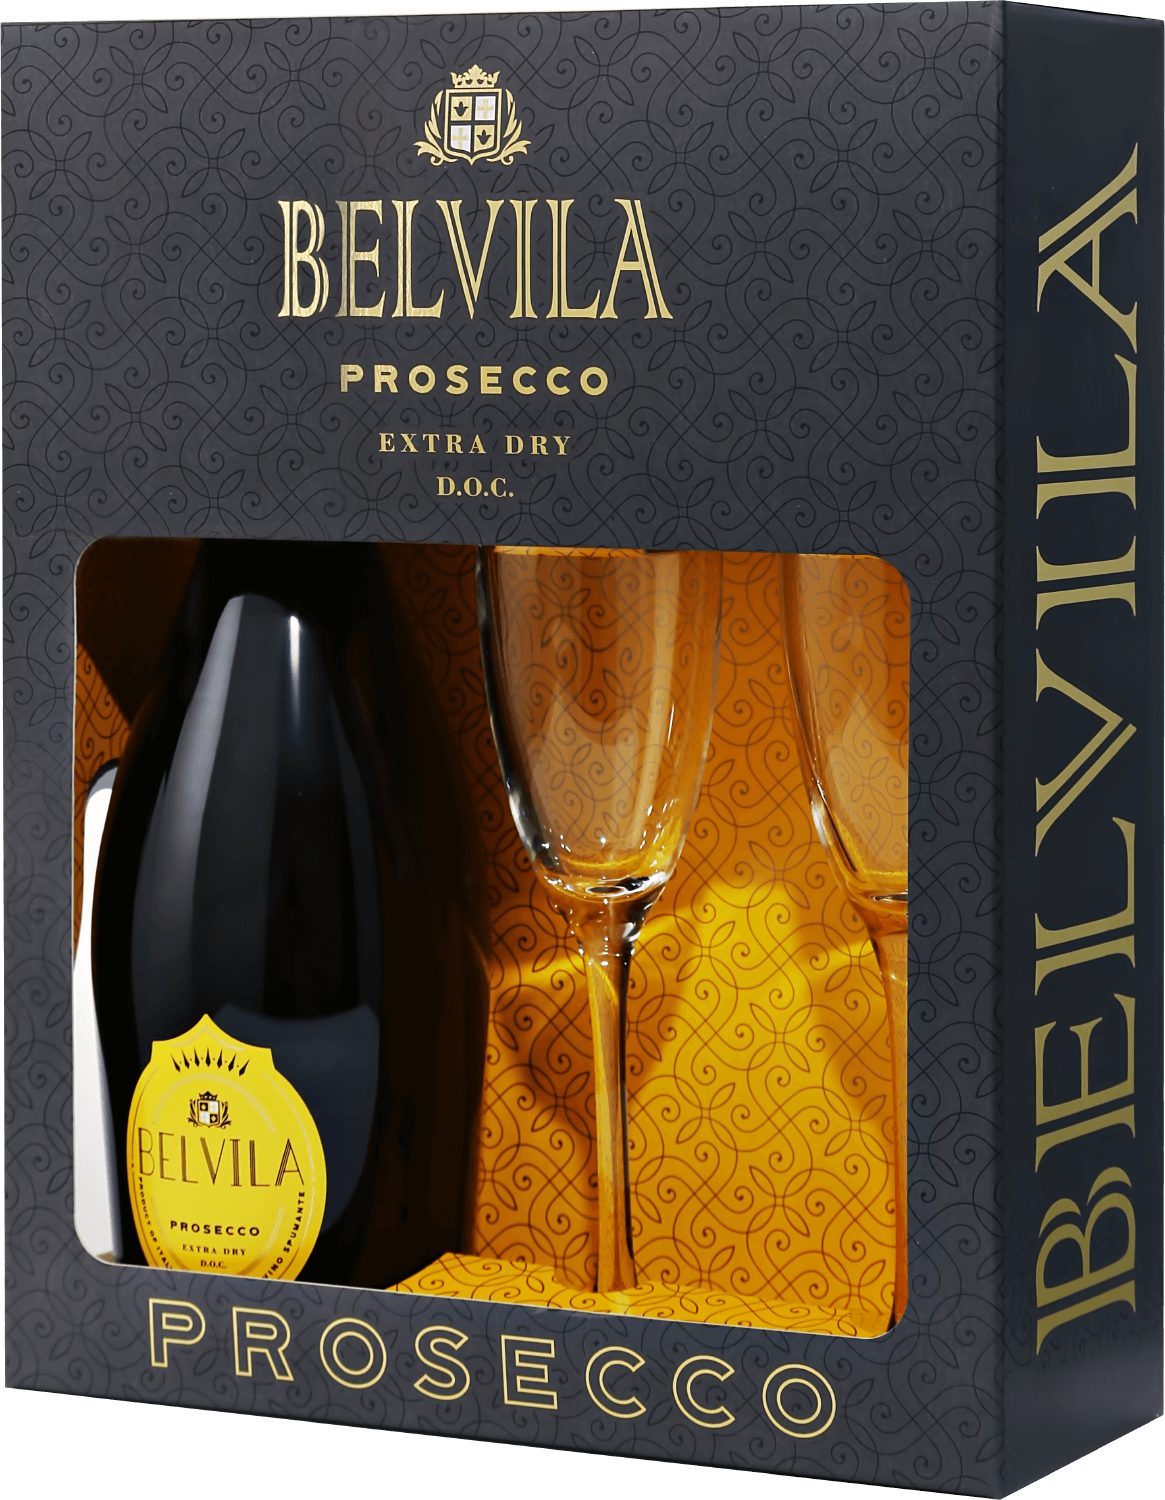 Belvila Prosecco DOC Spumante Extra Dry Villa Degli Olmi (gift box)